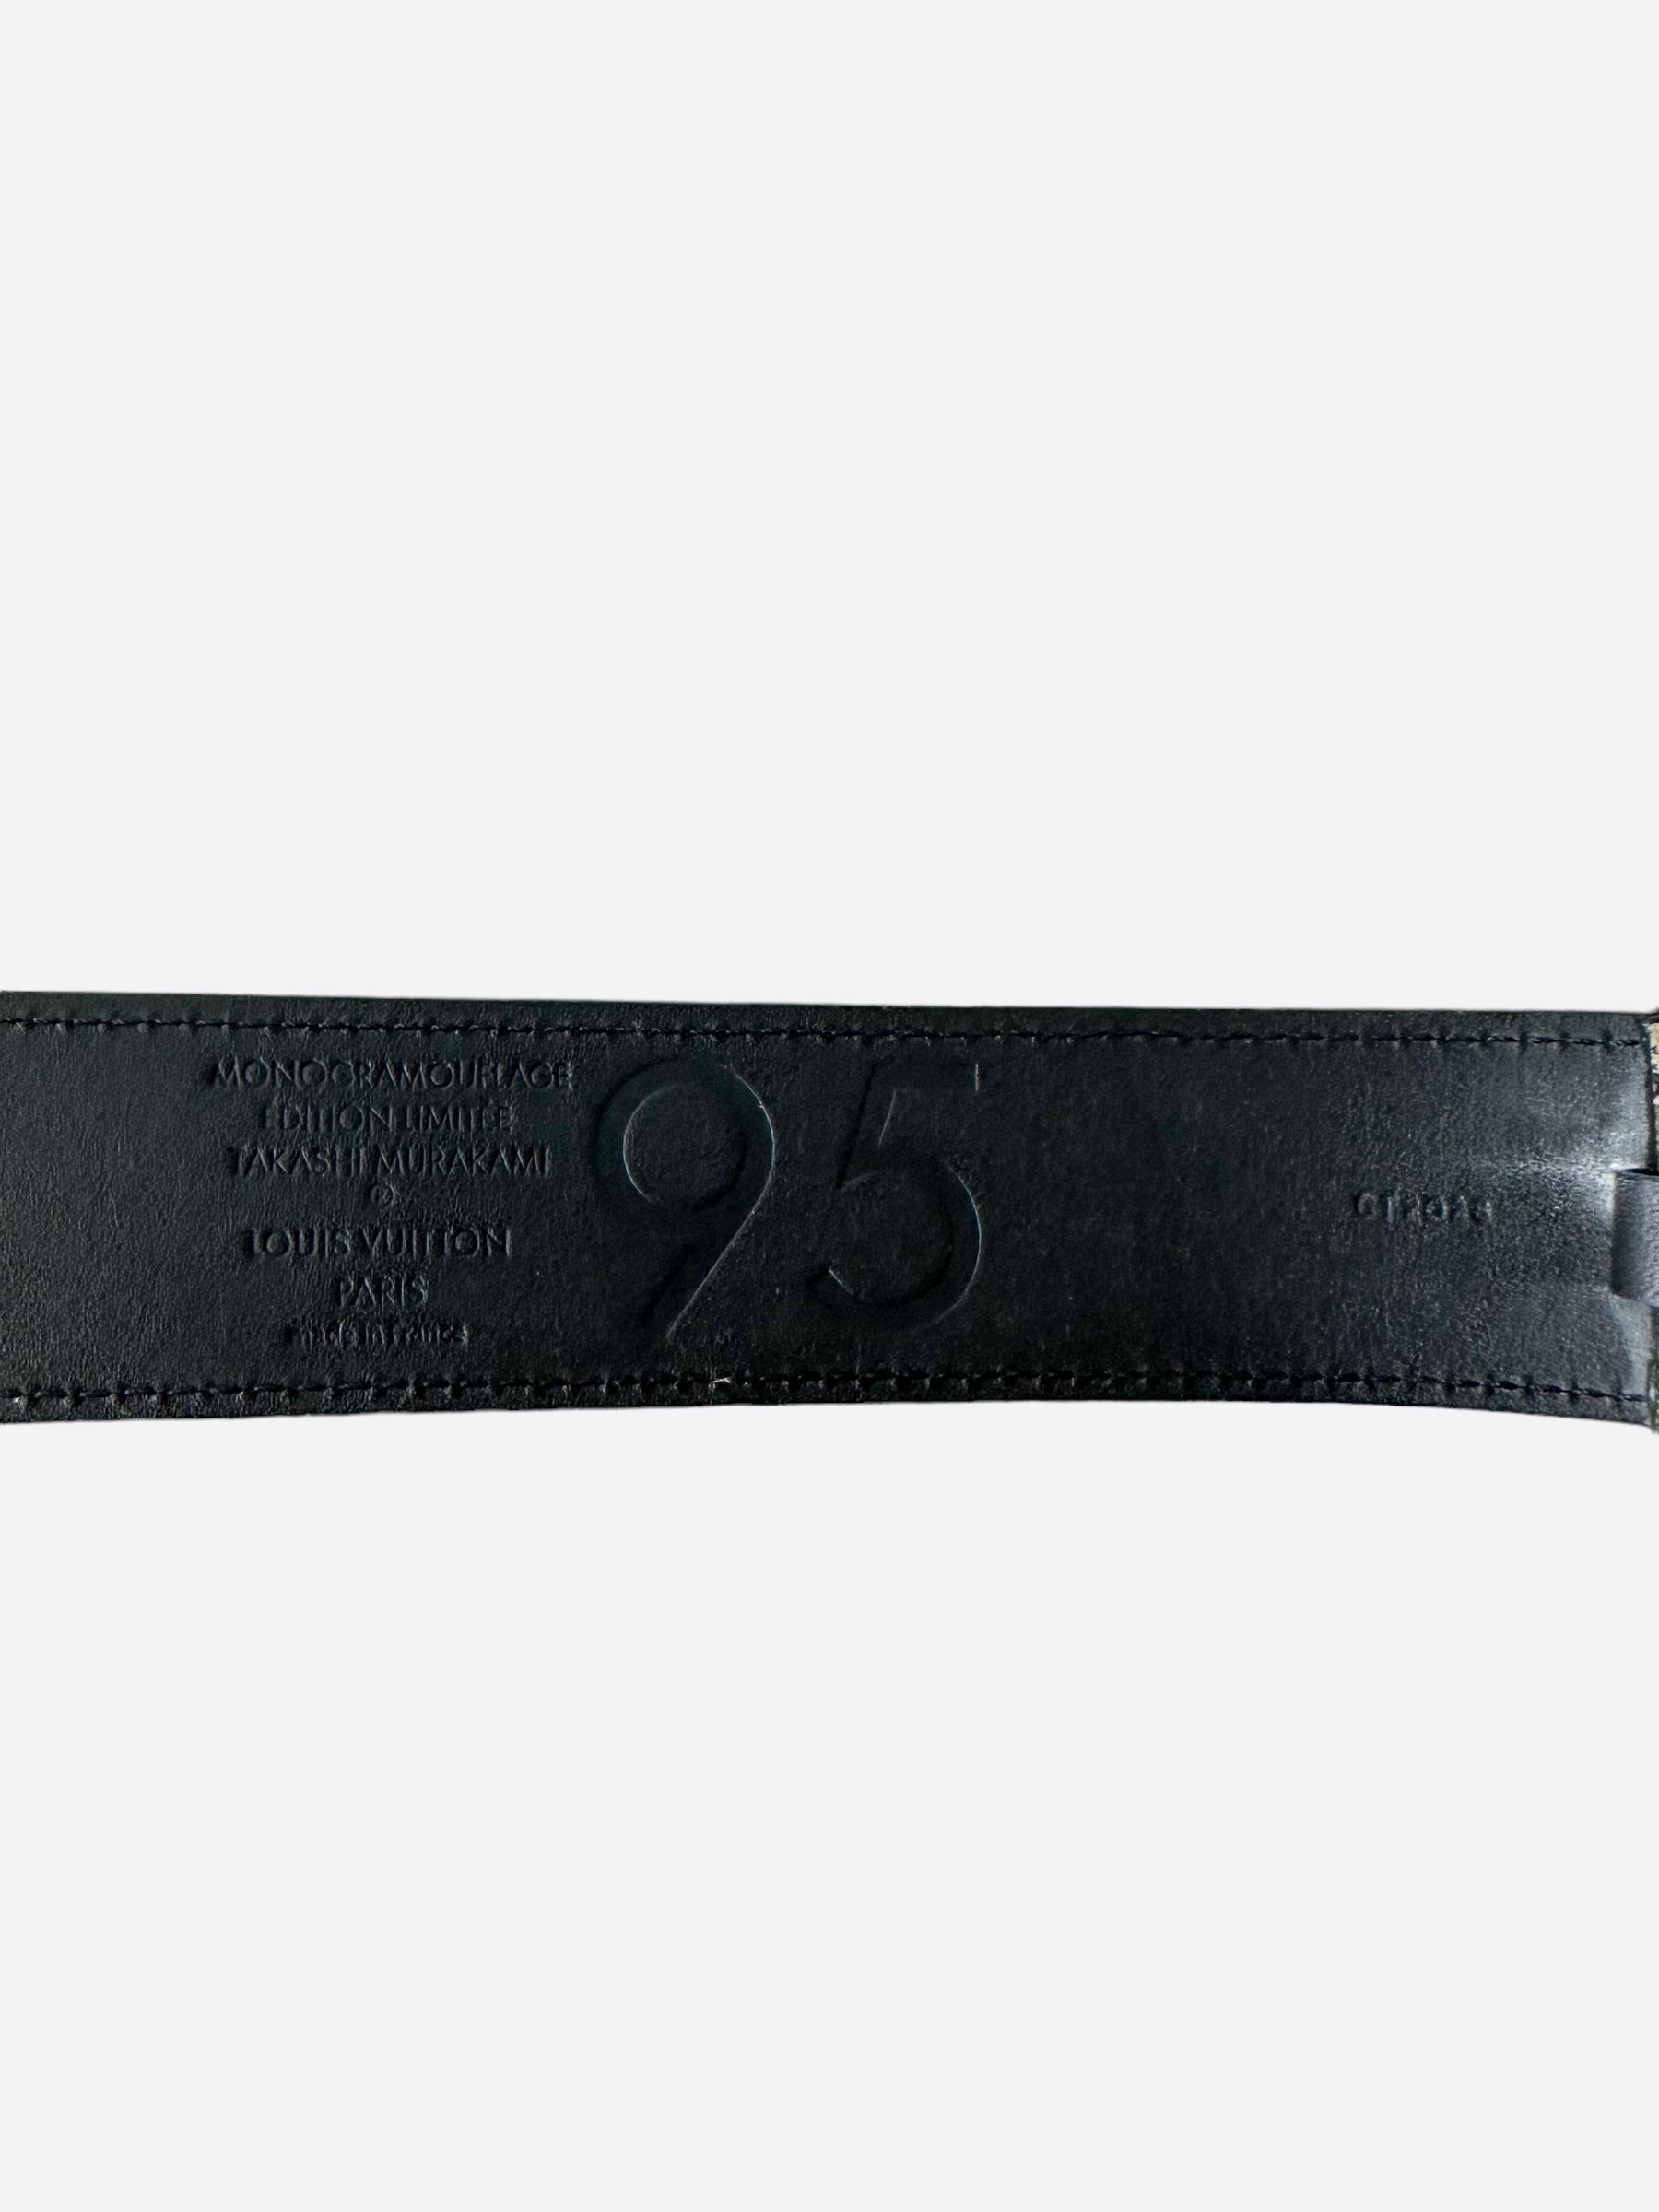 Louis Vuitton belt with Gold buckle hardware 95 cm Louis Vuitton